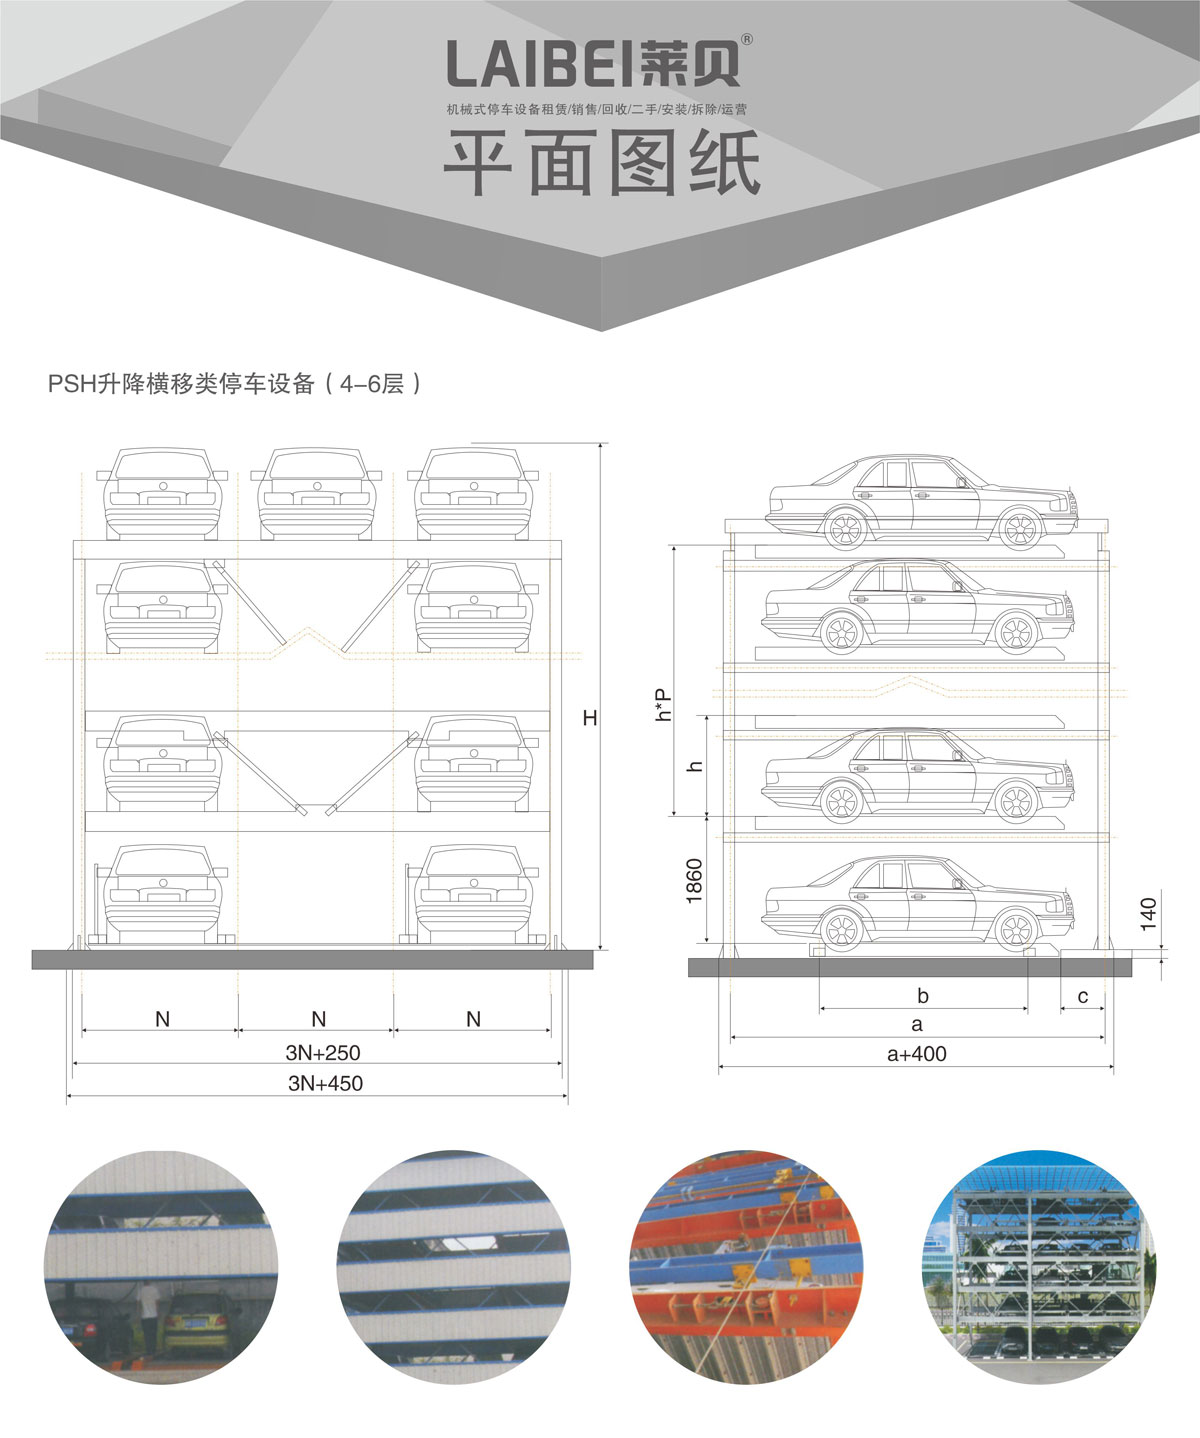 05四至六層PSH4-6升降橫移機械式停車設備平面圖紙.jpg